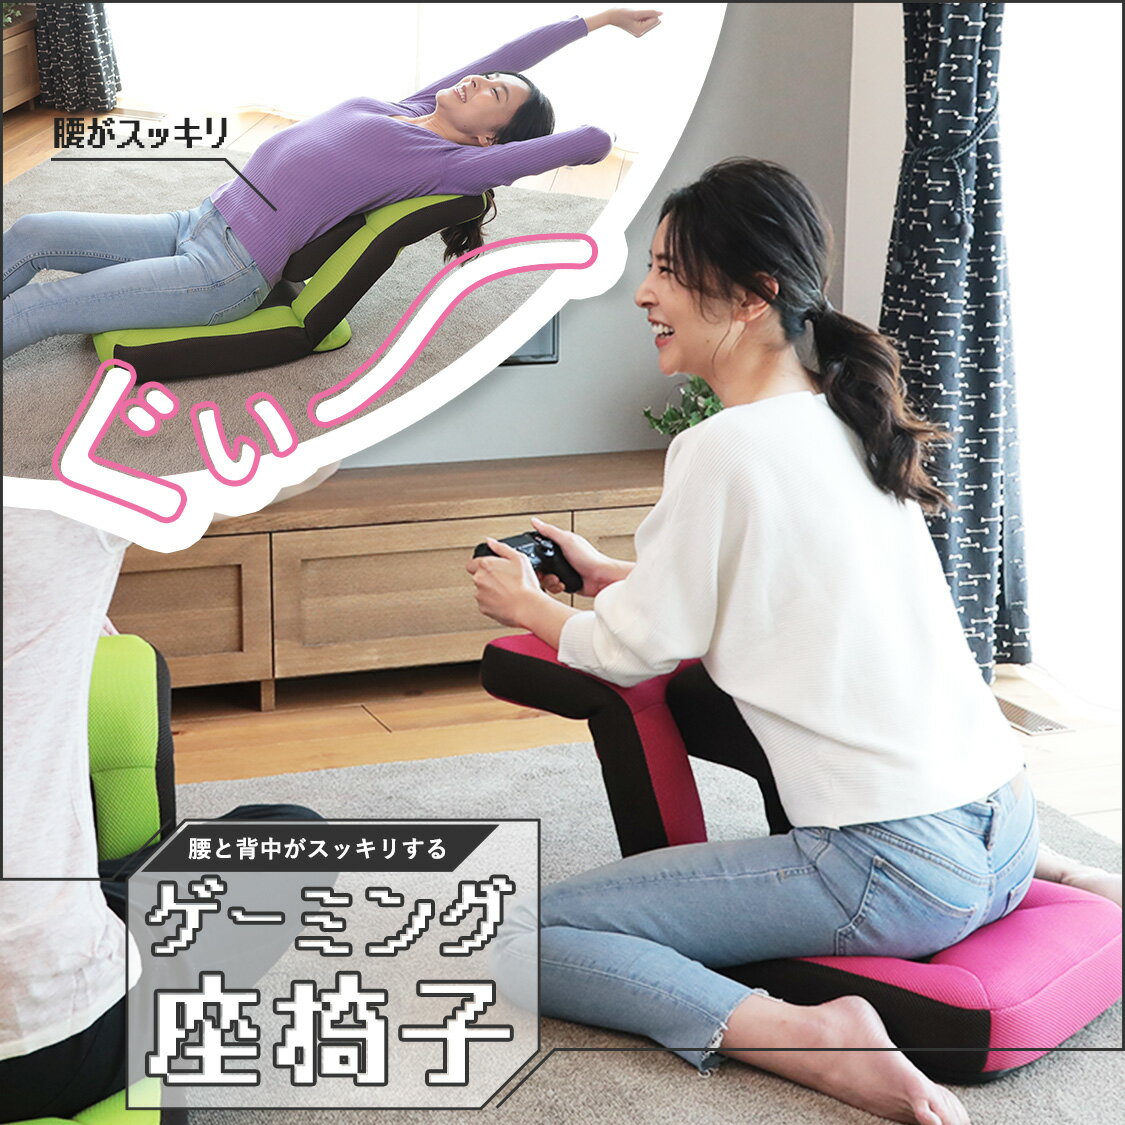 腰と背中がスッキリするゲーミング座椅子 ZZZ アロー | 一人用 座椅子 かわいい 椅子 低い椅子 いす おしゃれ リクライニング ゲーム ゲーミング イス チェア 腰 コンパクト リクライニングチェア ゲーミングチェア パーソナルチェア 腰痛 メッシュ 韓国 収納 ゲームチェア